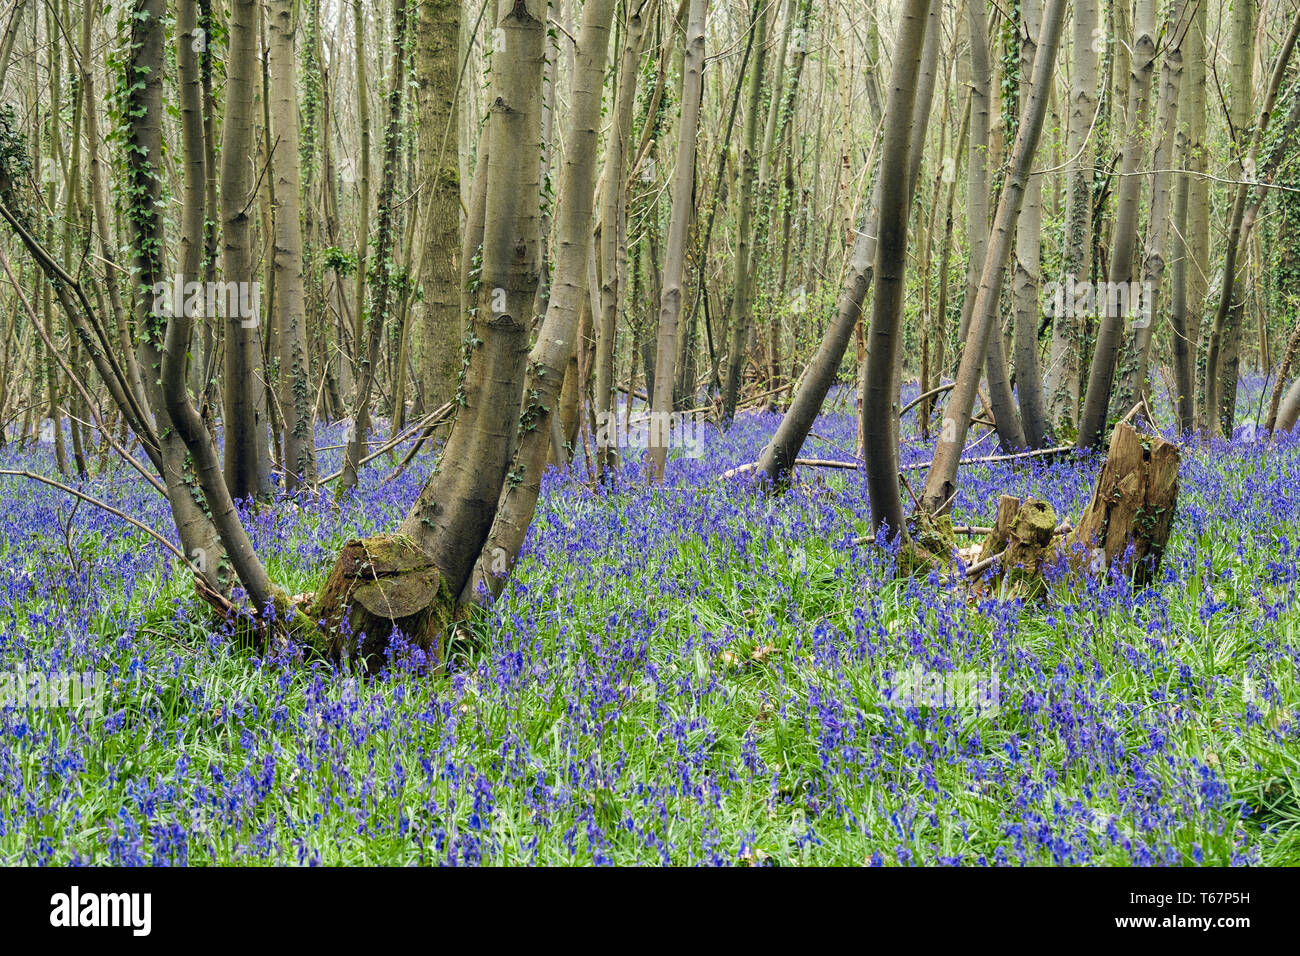 Langue maternelle anglaise Bluebells poussant dans un bois Bluebell mixte avec arbres taillis au printemps. West Stoke, Chichester, West Sussex, Angleterre, Royaume-Uni, Angleterre Banque D'Images